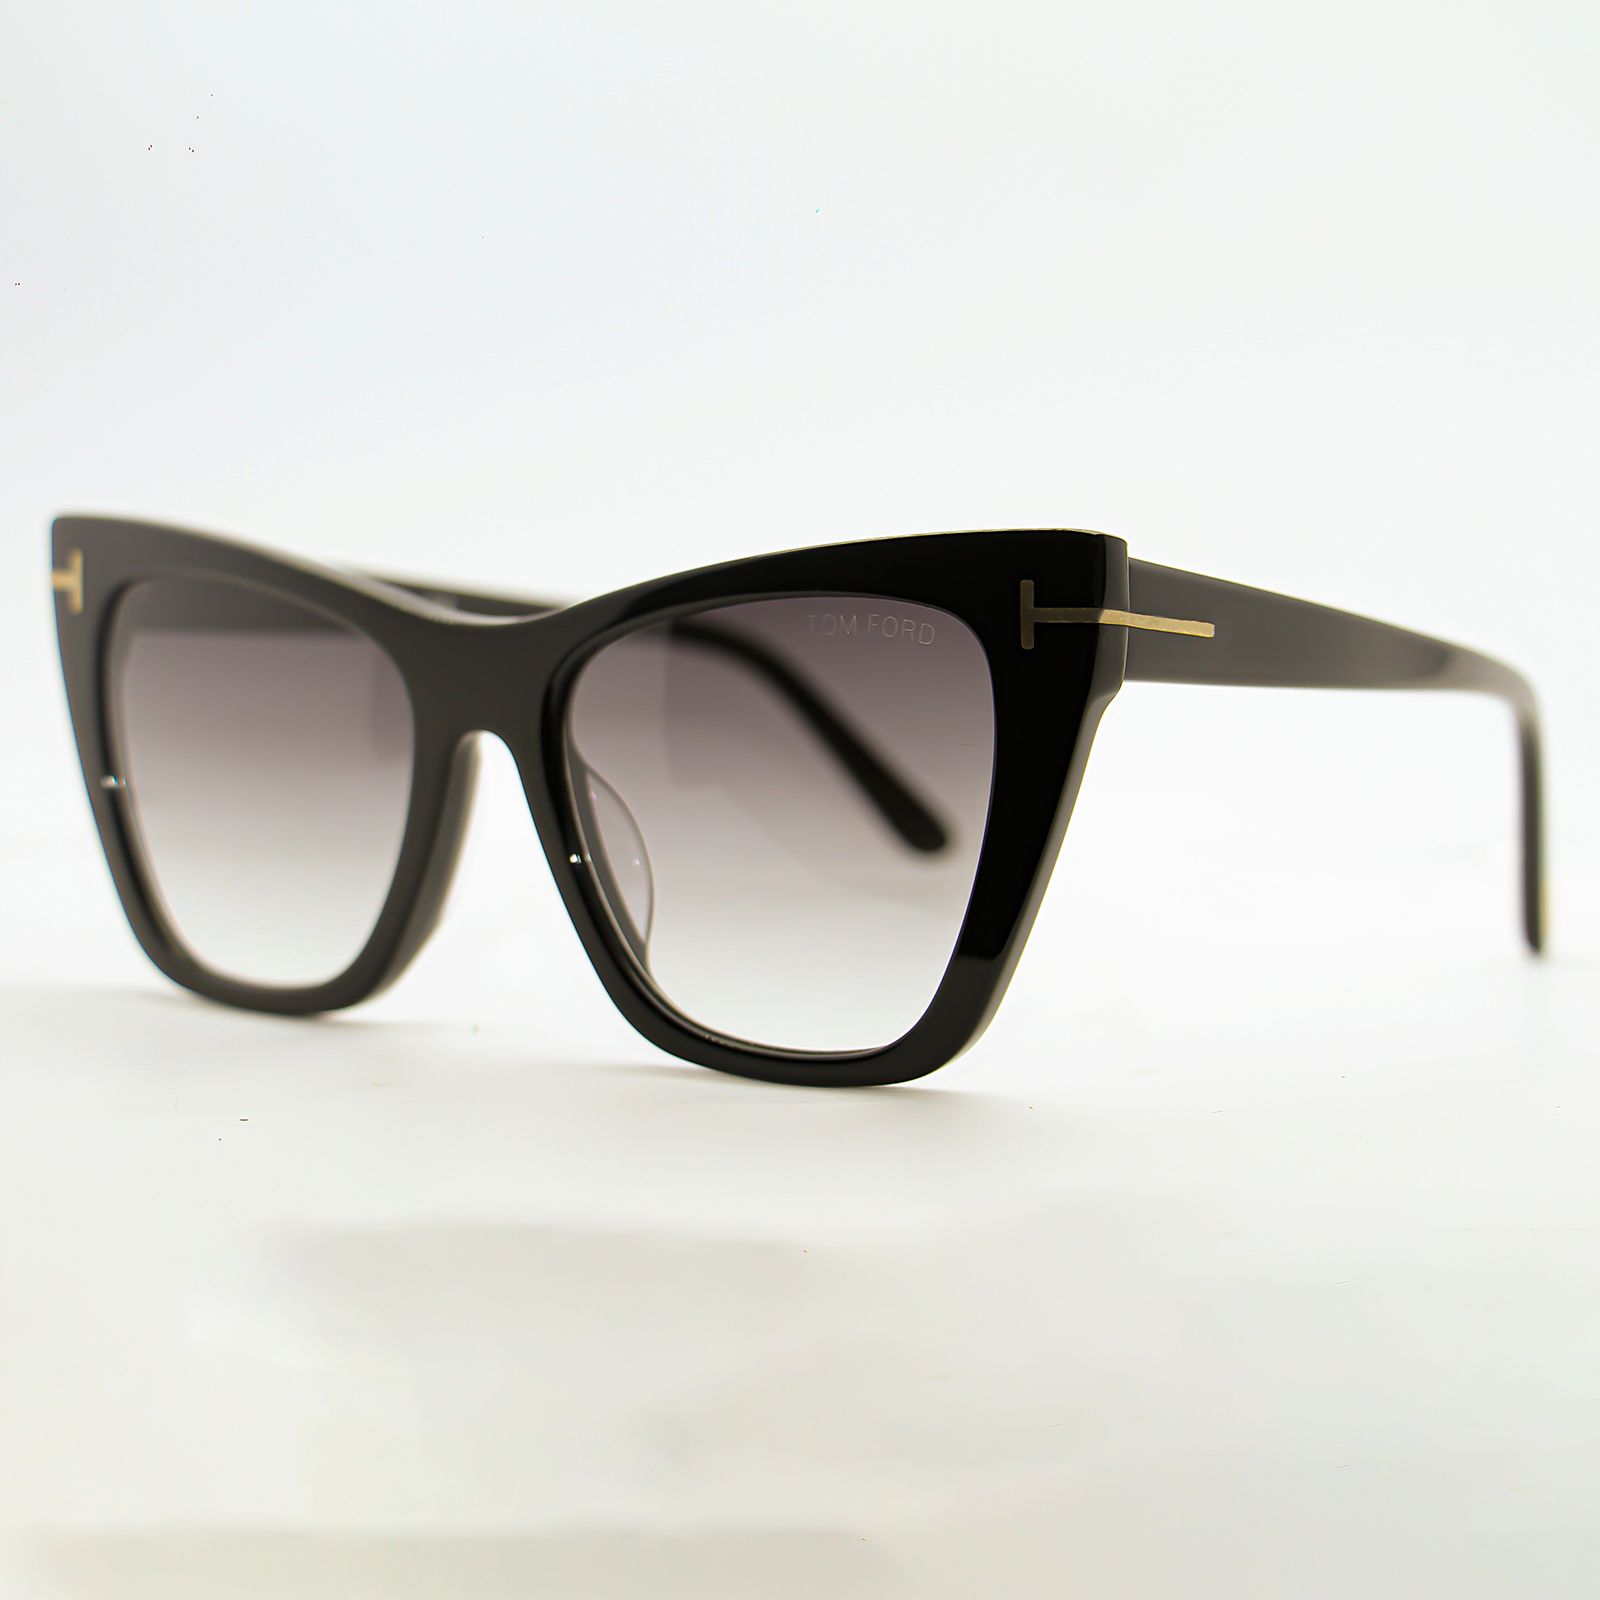 عینک آفتابی زنانه تام فورد مدل Poppy-02 TF846 -  - 5